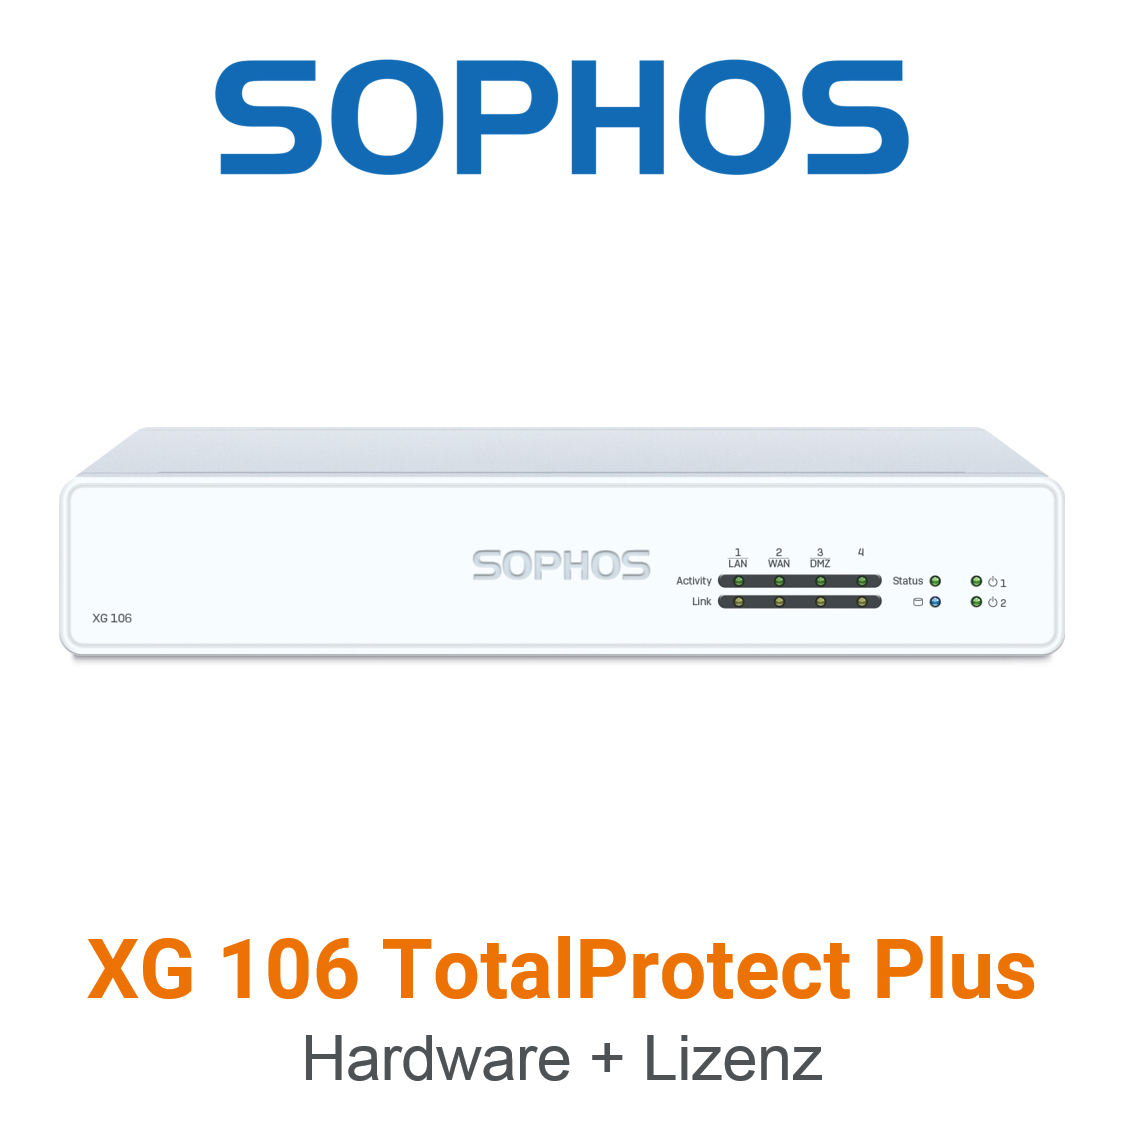 Sophos XG 106 TotalProtect Plus Bundle (Hardware + Lizenz)